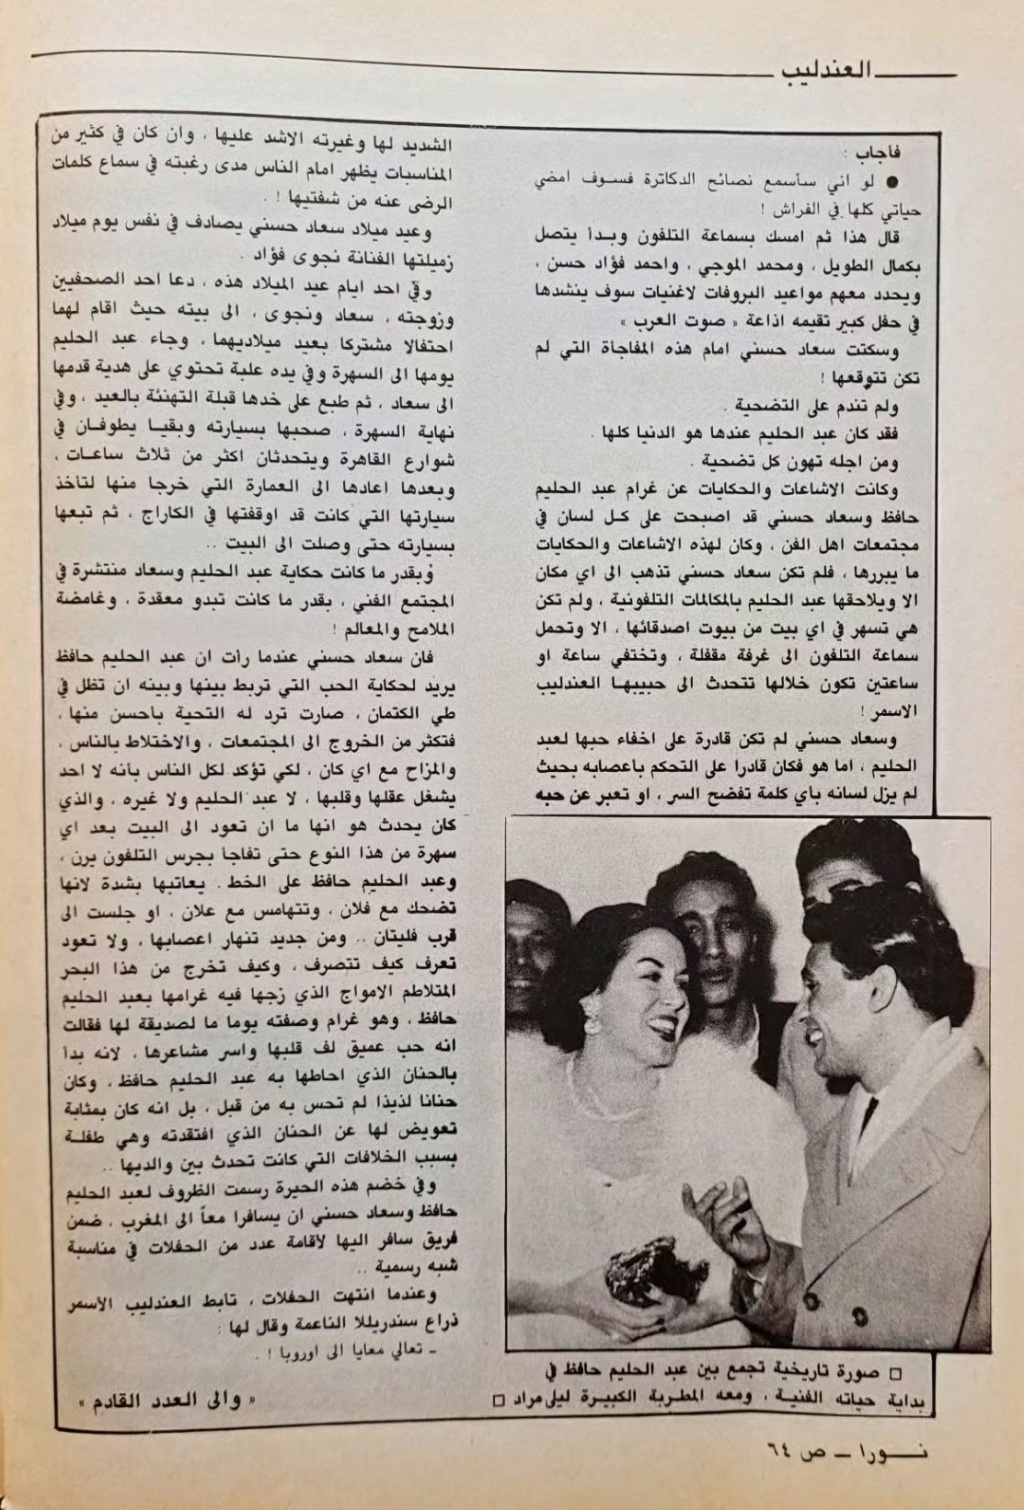 1977 - مقال صحفي : حكاية طويلة .. متى بدأت ؟ بين العندليب وسعاد حسني 1983 م 712